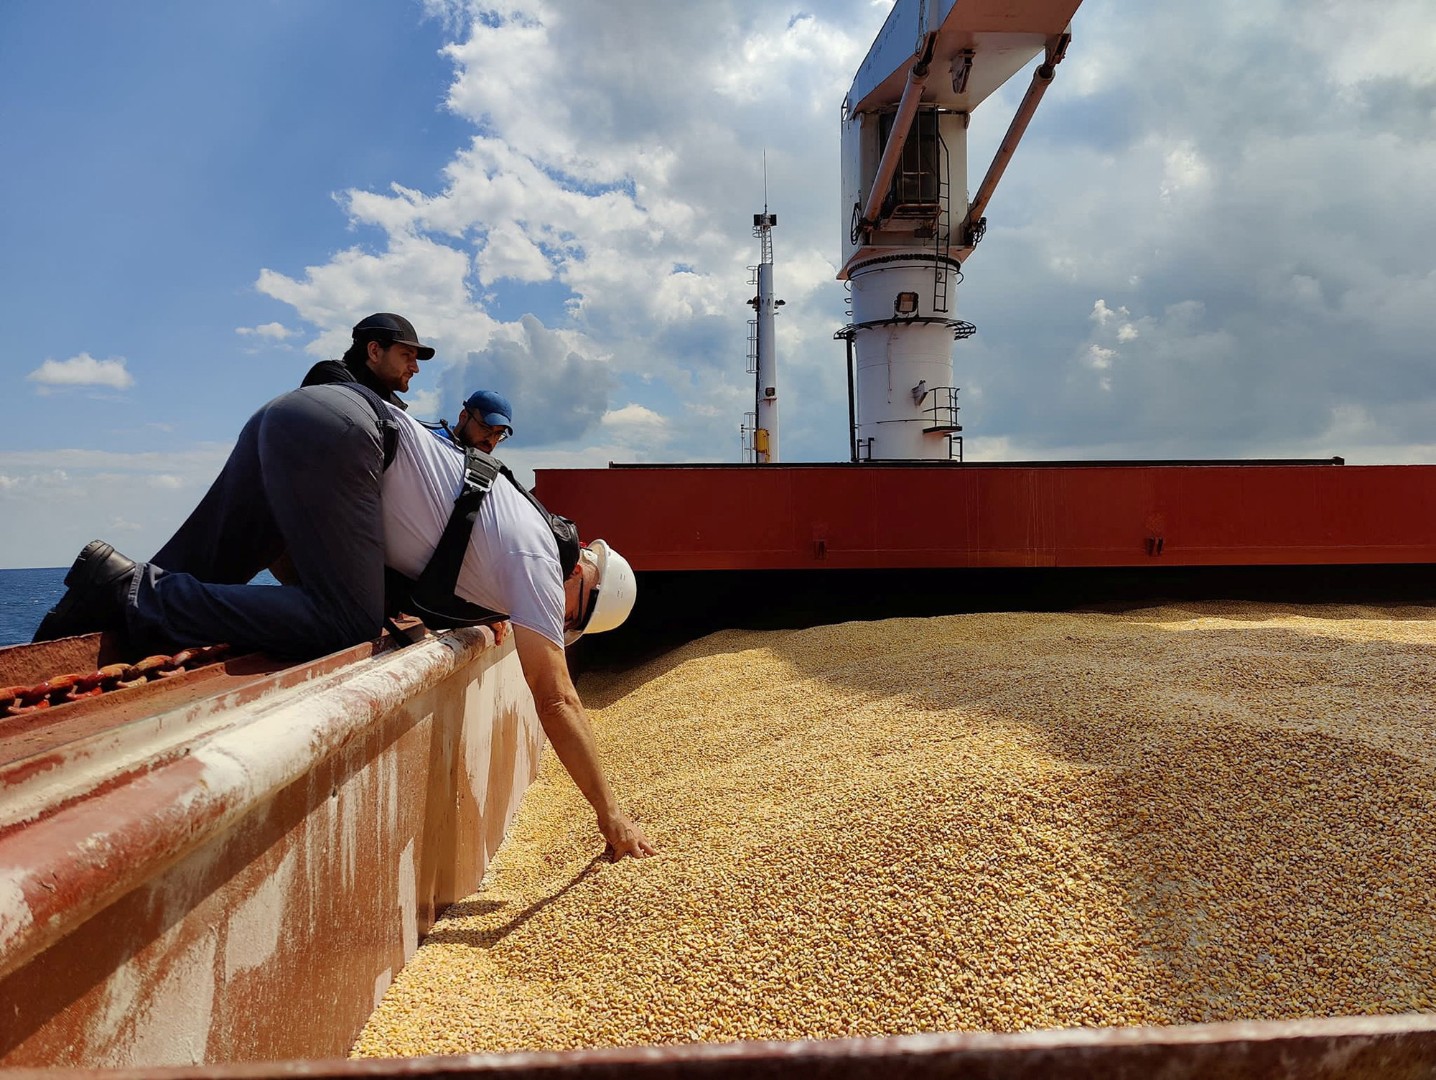 Объем закупок зерна в госфонд составил 1,08 тыс. тонн. В понедельник закупали только пшеницу